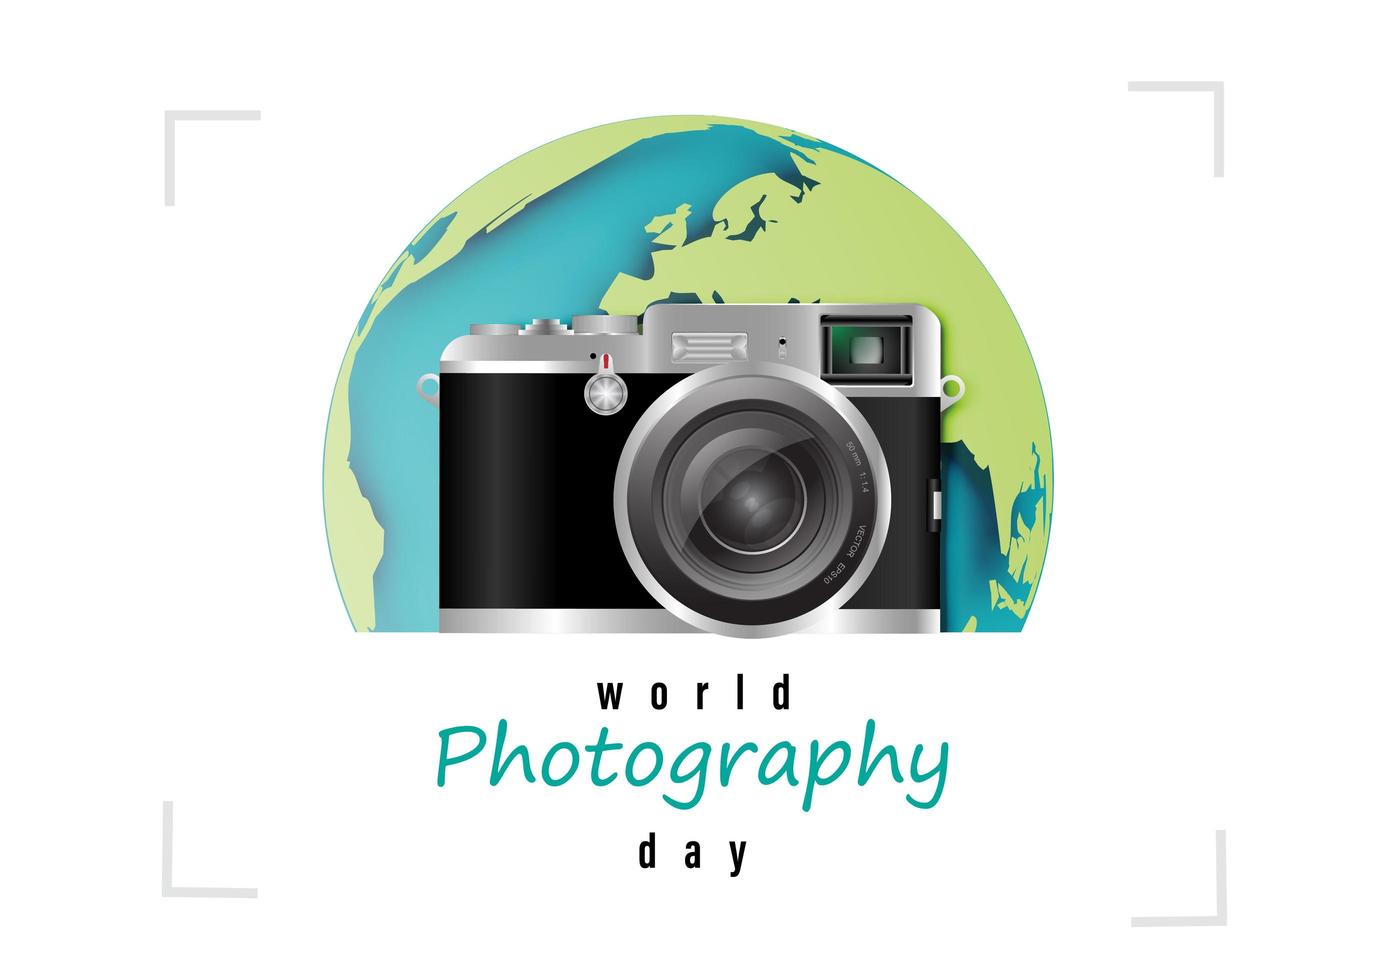 världsfotografidagdesign med retro kamera vektor